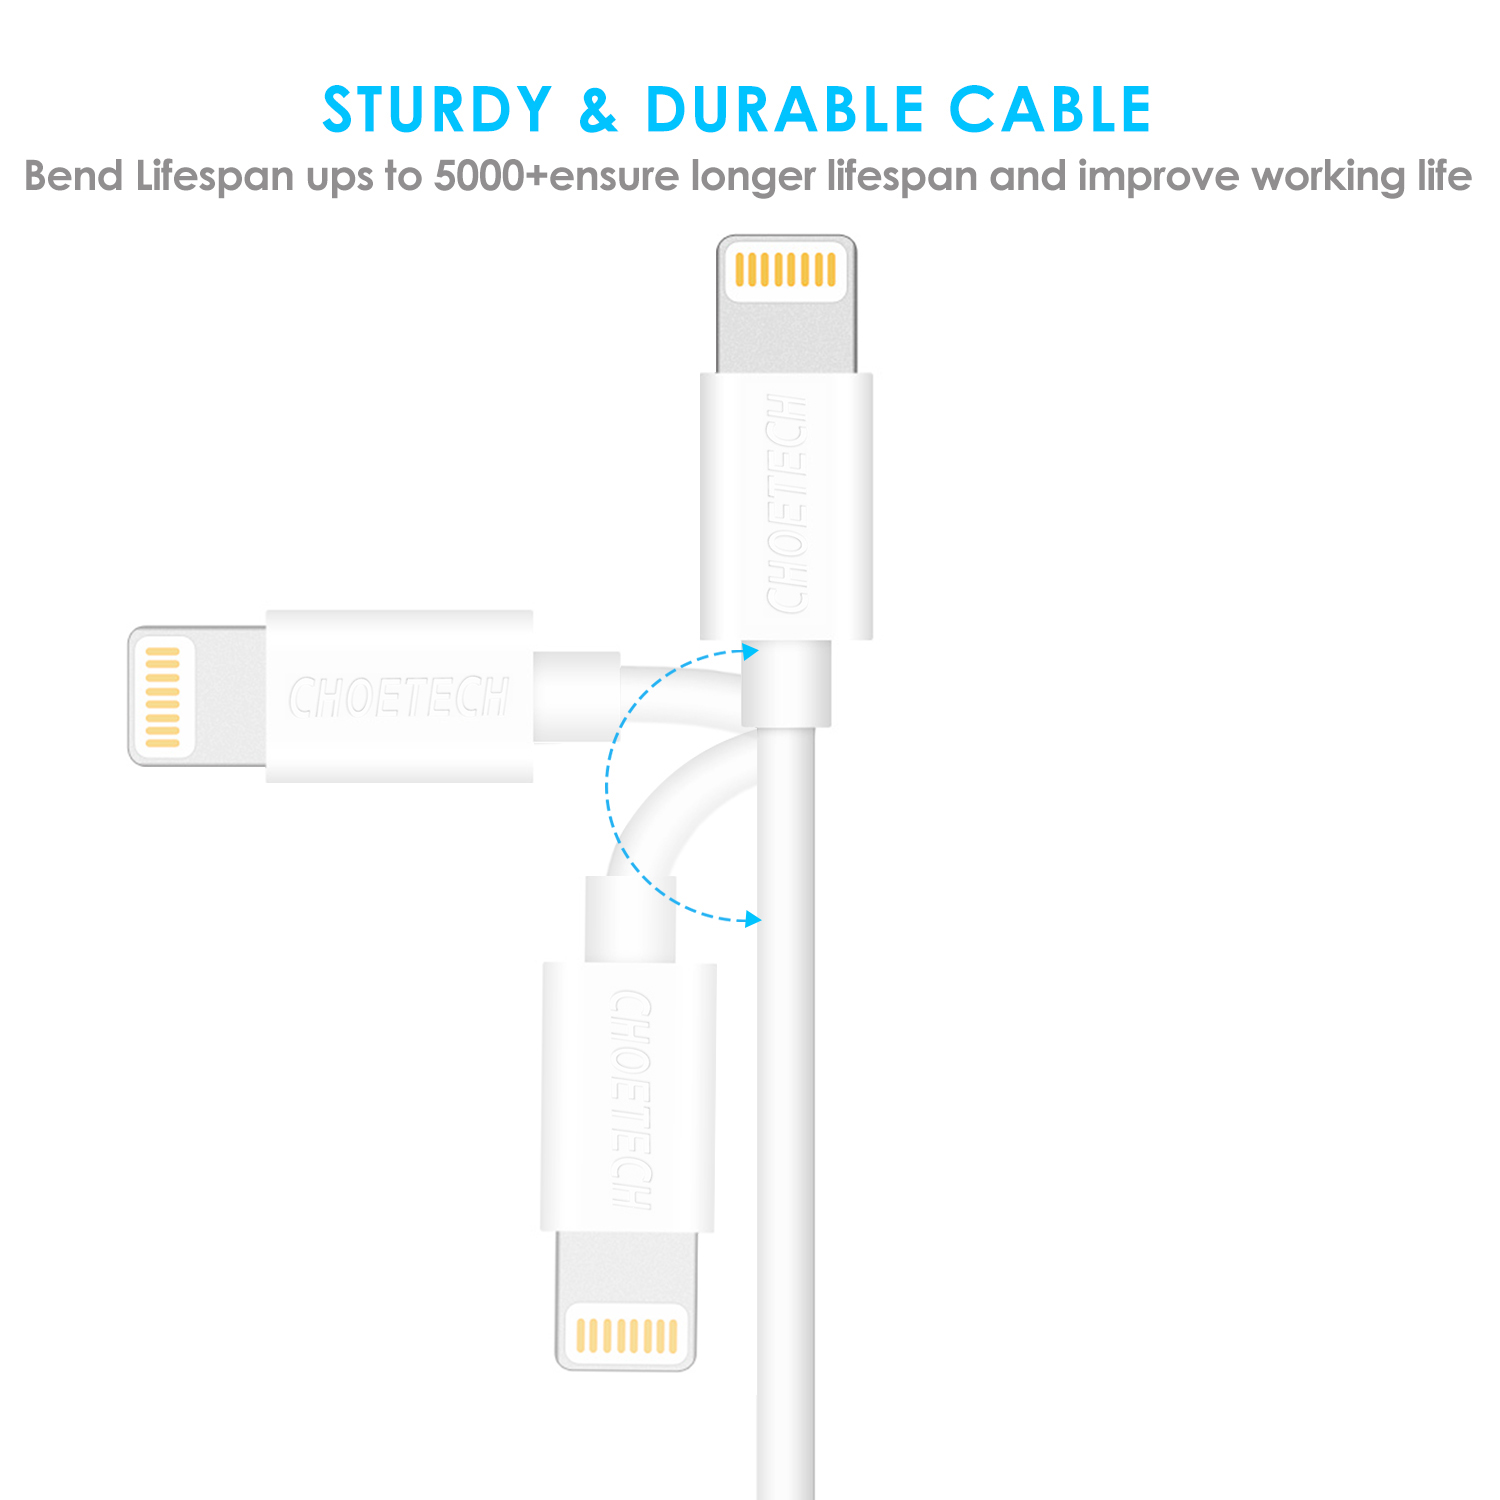 สายชาร์จ Choetech รุ่น USB to Lightning Cable 1.2m MFI Certified Nickel-Plated Connectors (IP0026) - สีขาว